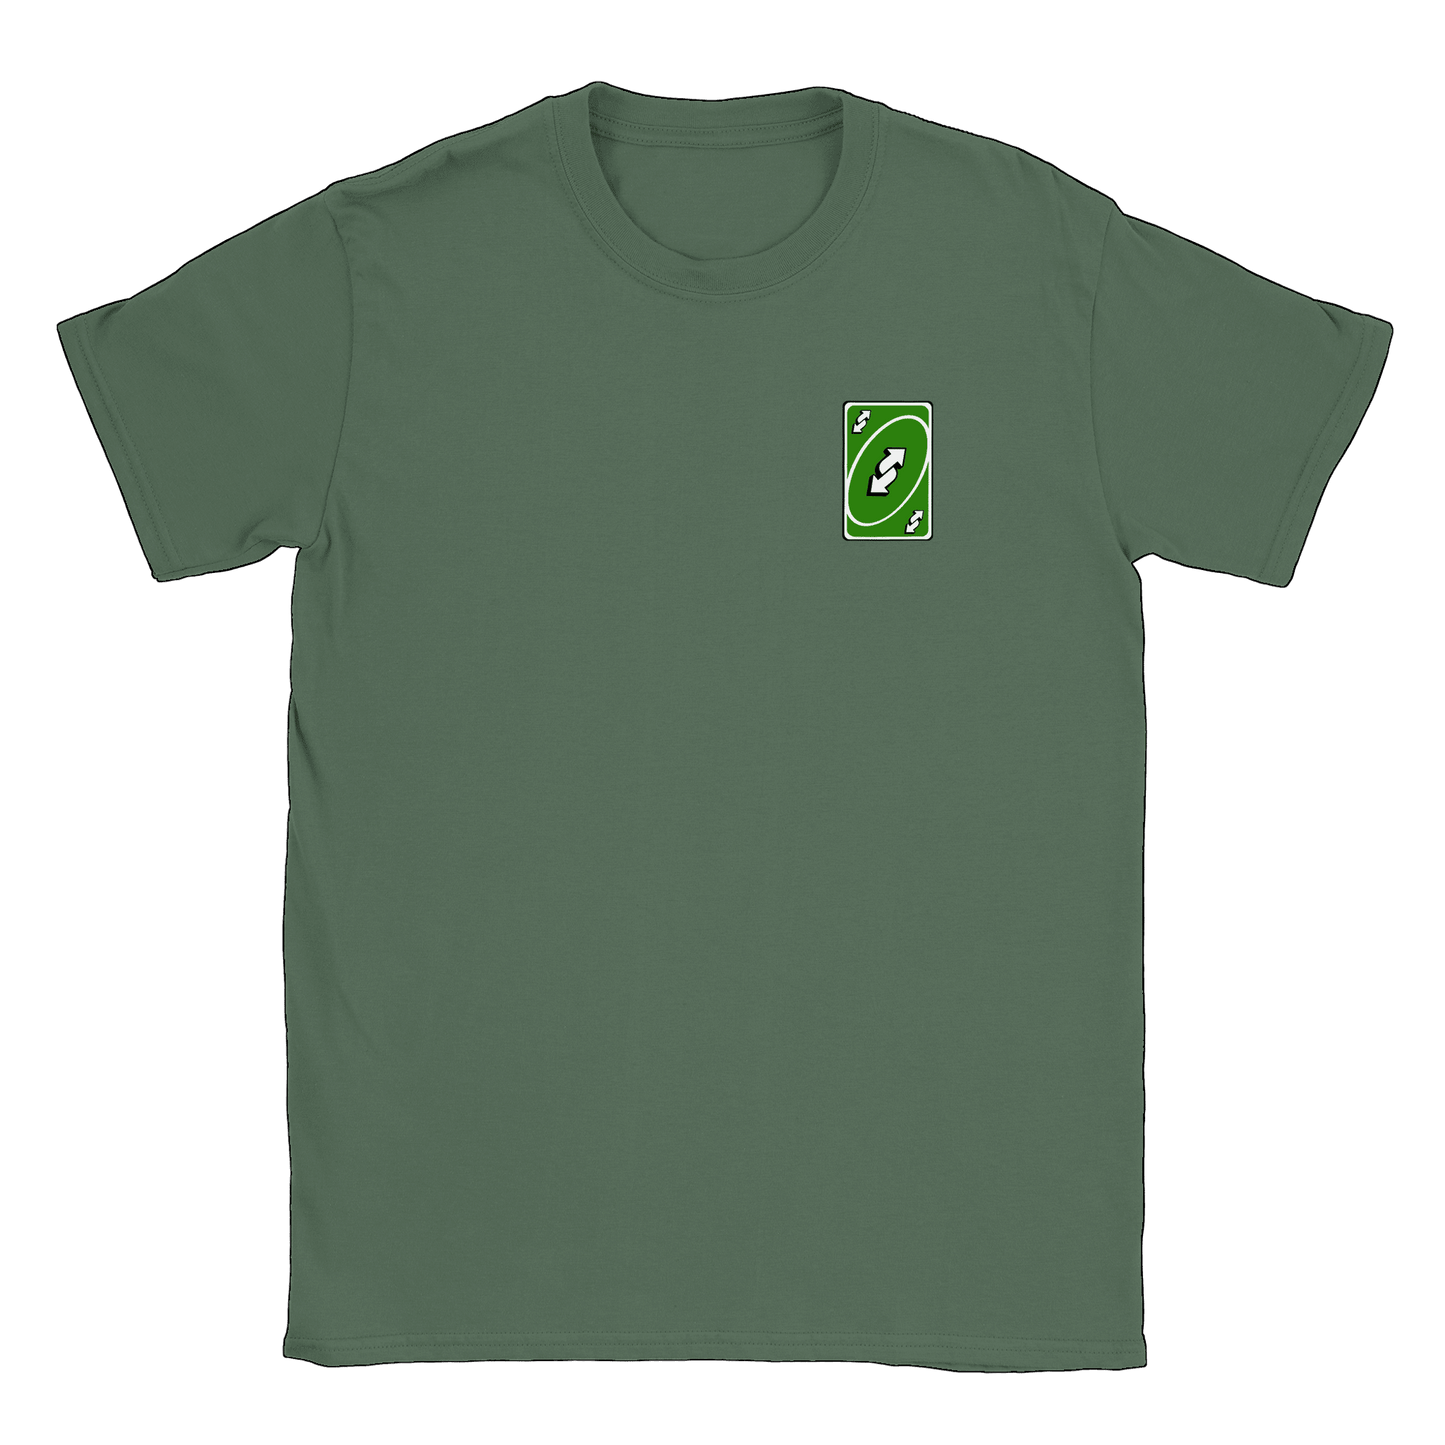 Vändkort litet - T-shirt Military Green